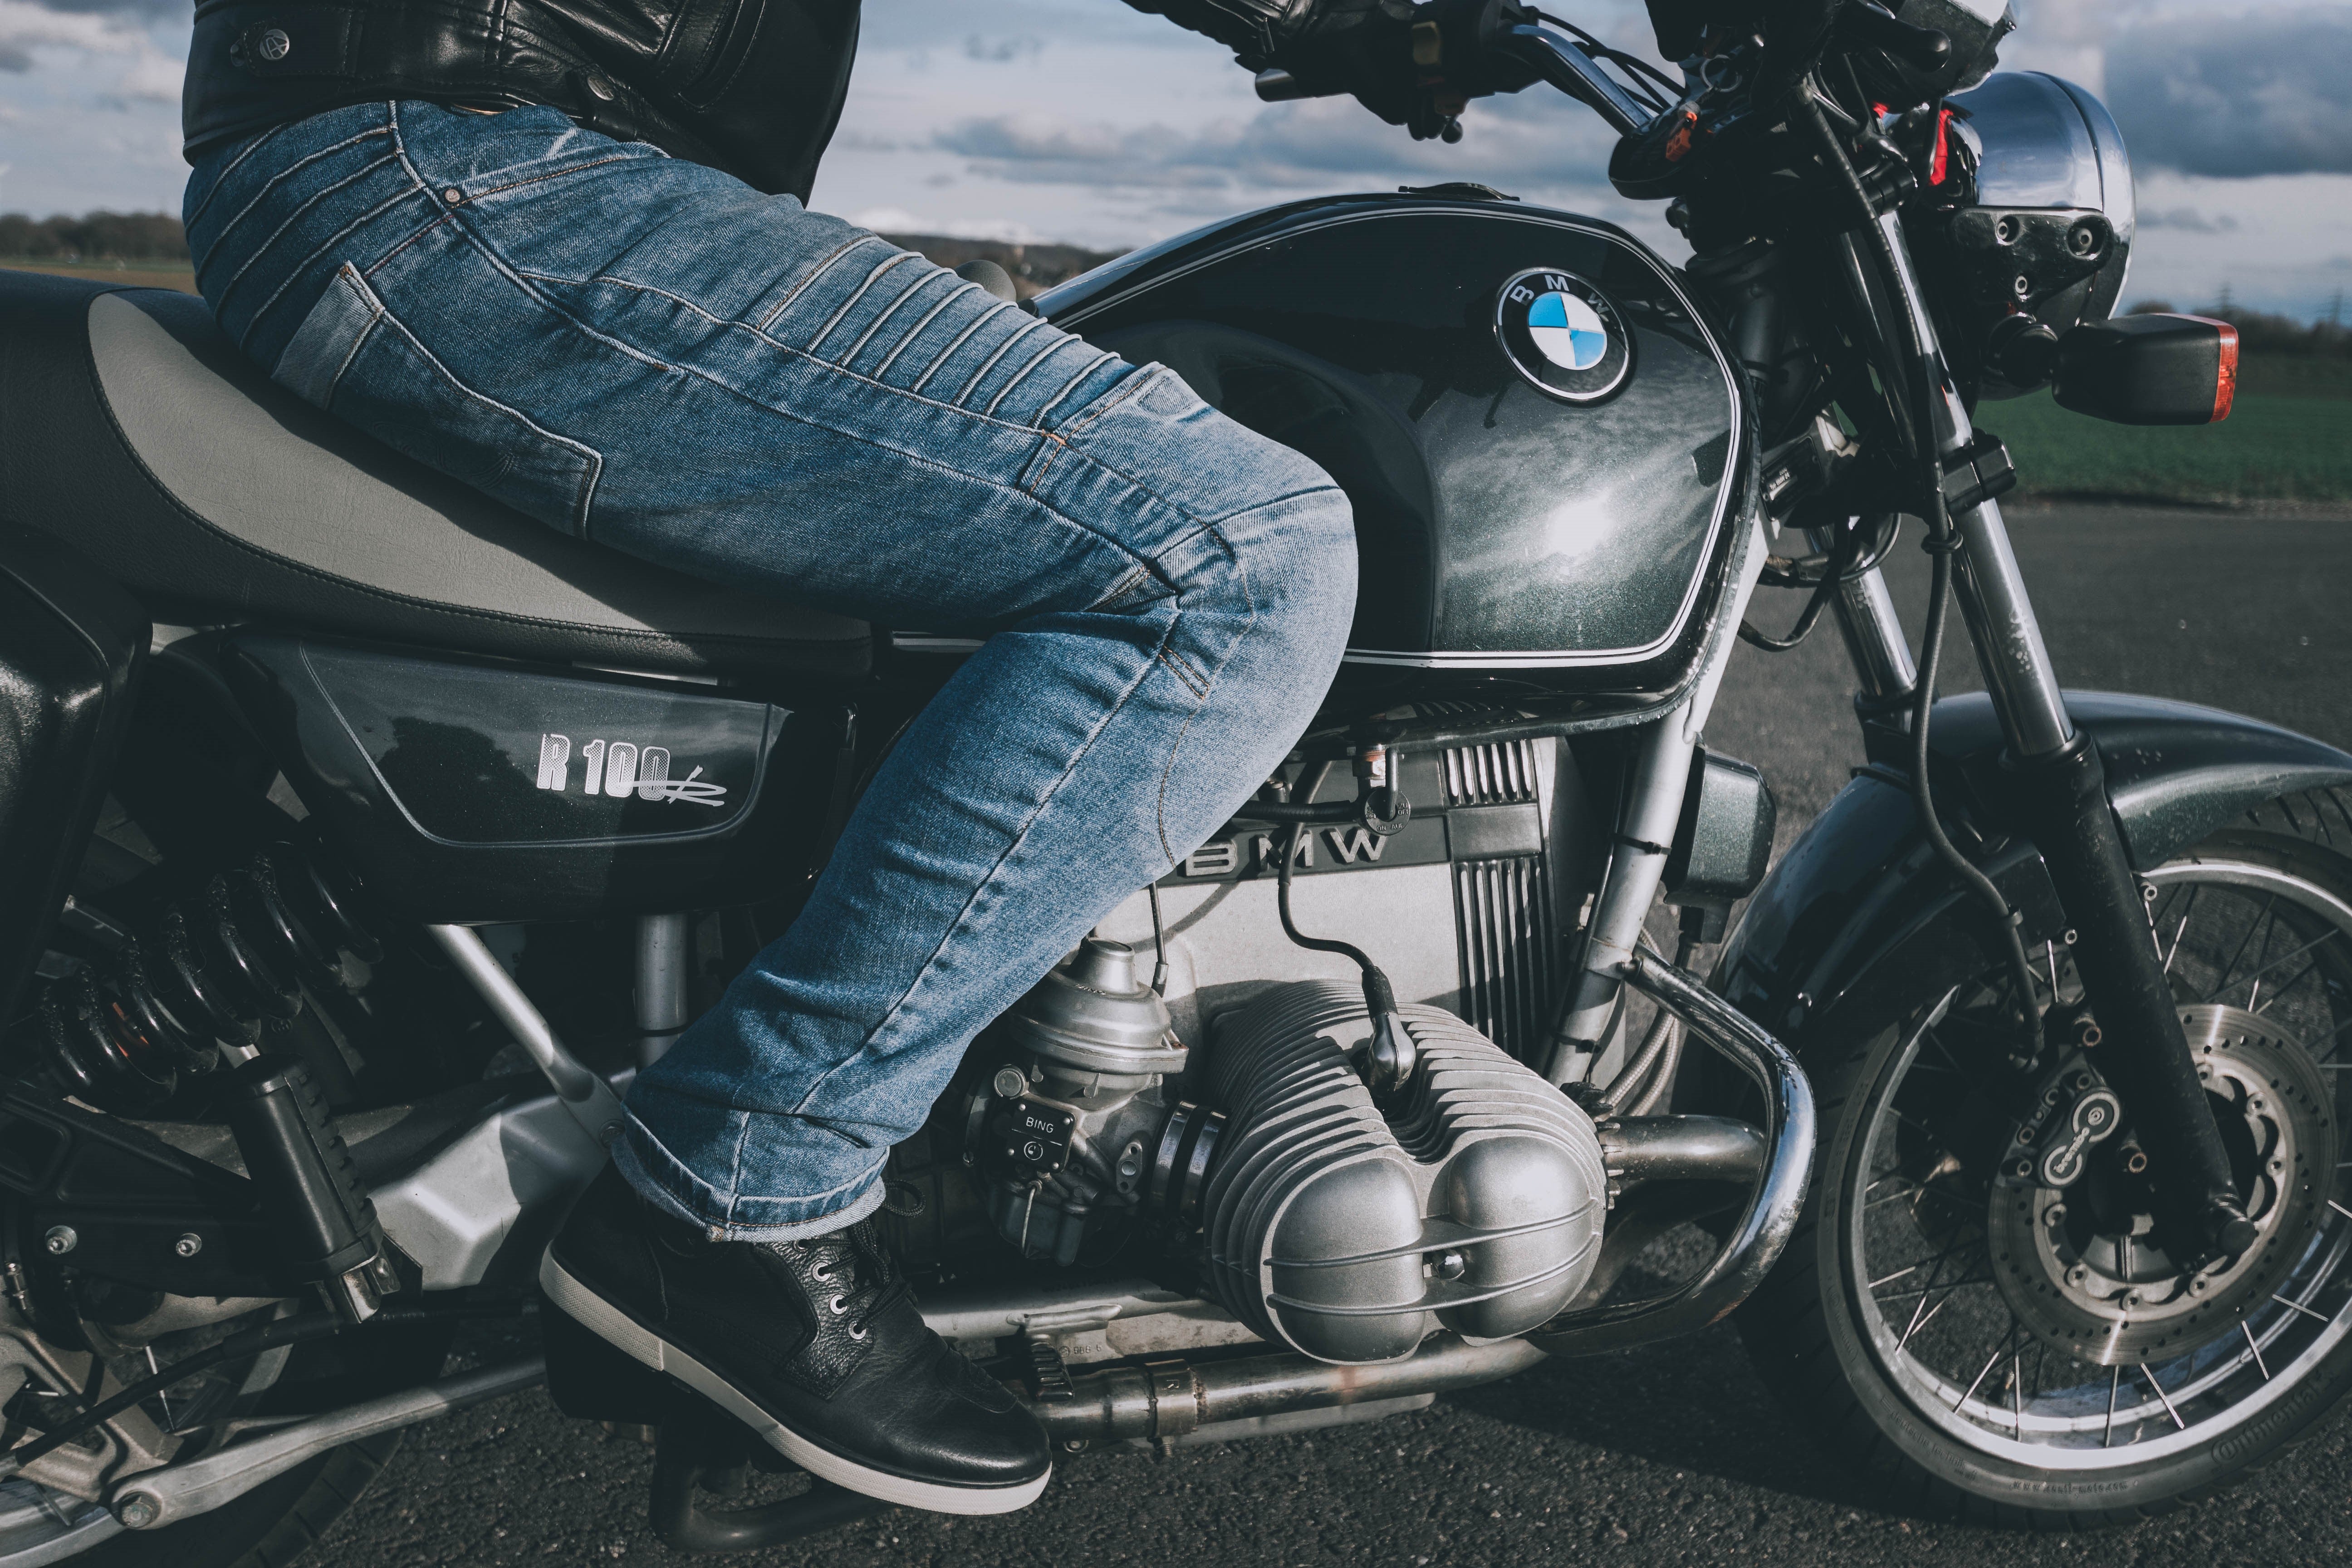 Best Summer Motorcycle Pants Guide (Updated Reviews!) - Motorcycle Gear Hub